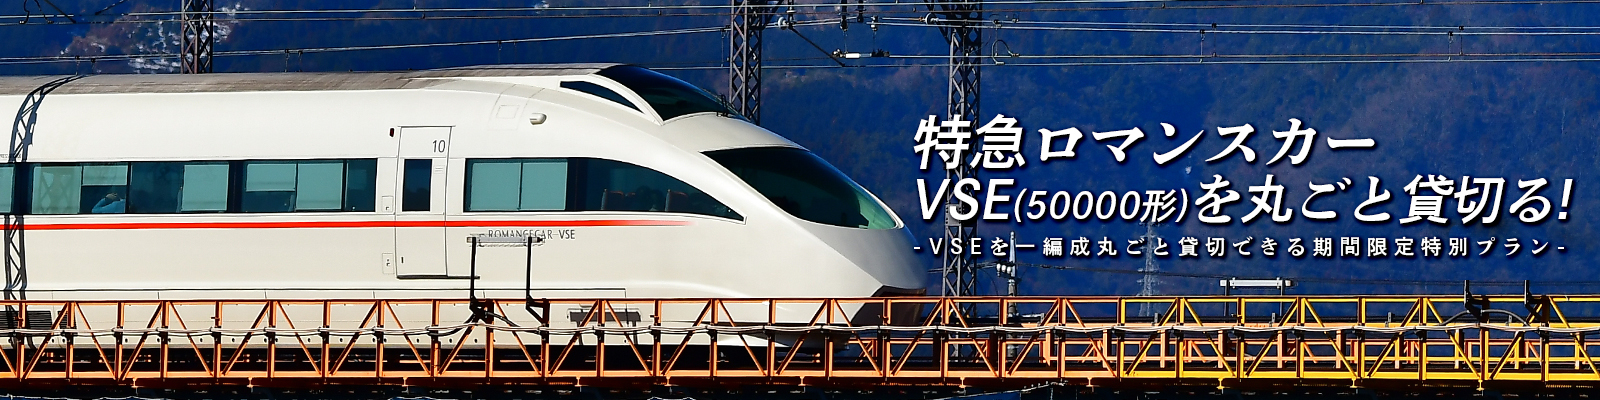 特急ロマンスカー・VSE（50000形）貸切プラン | 小田急旅の予約サイト